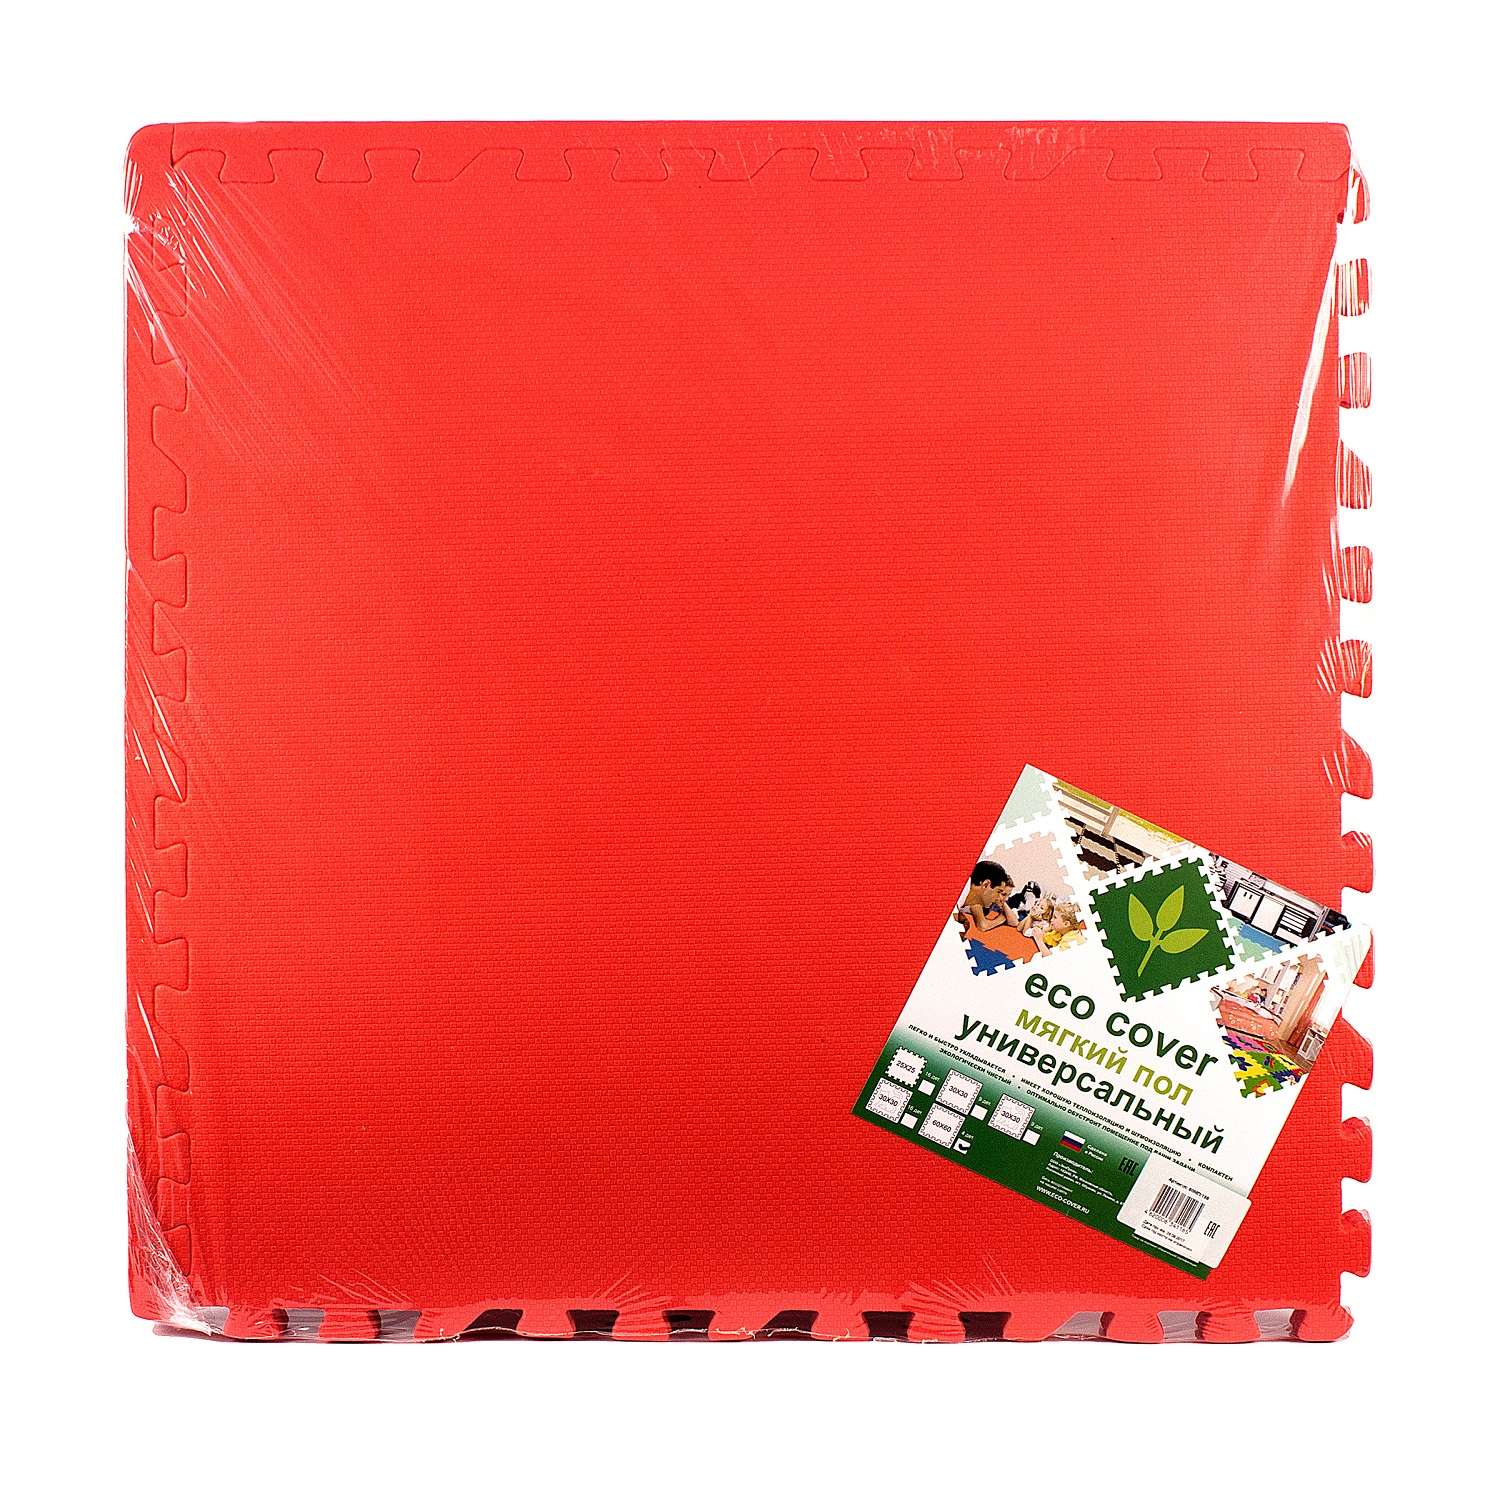 Развивающий детский коврик Eco cover игровой для ползания мягкий пол красный 60х60 - фото 1